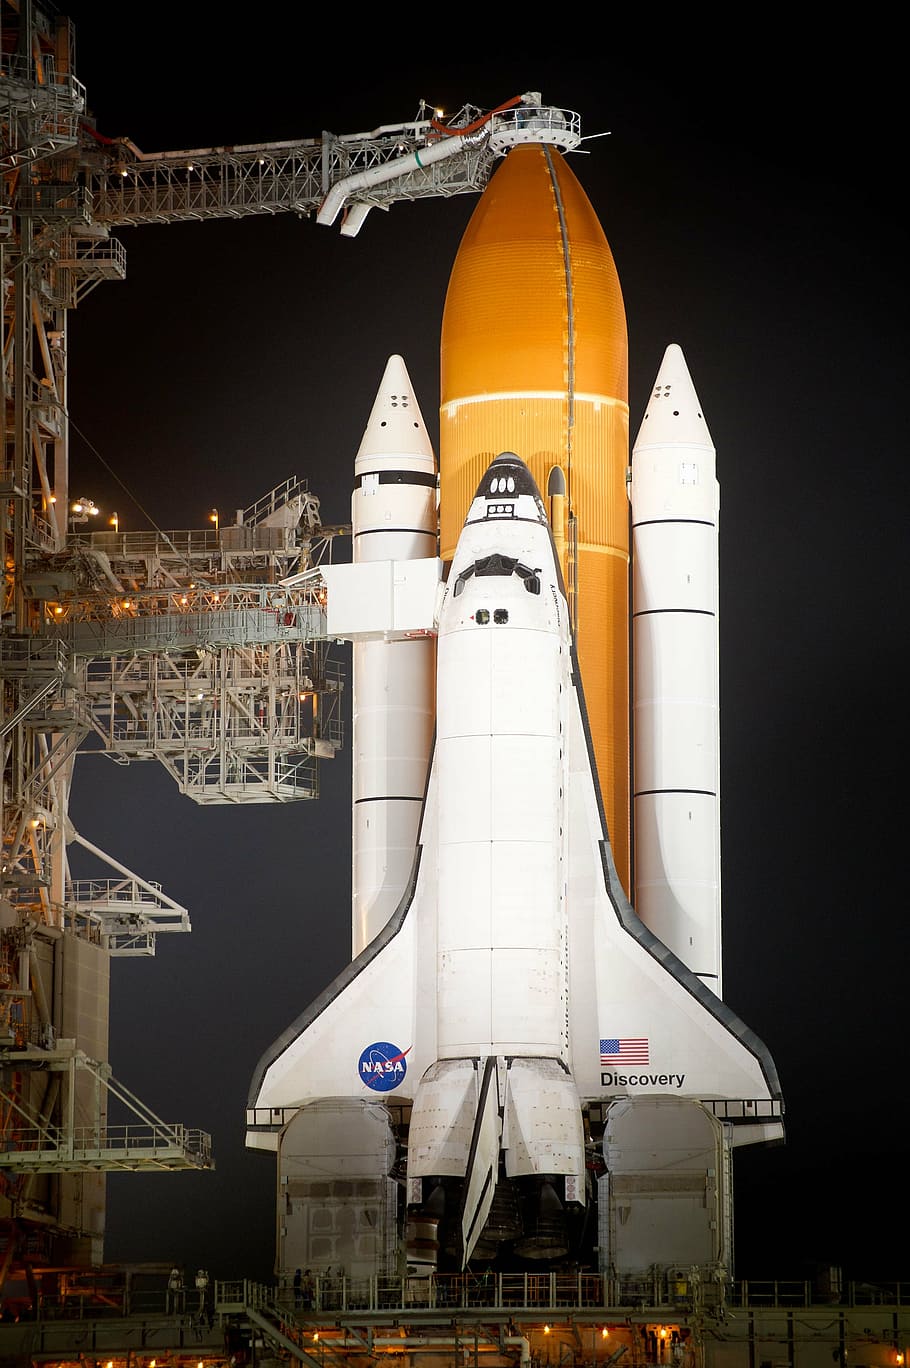 blanco, naranja, transbordador espacial de descubrimiento de la NASA, nocturno, transbordador espacial, descubrimiento, transbordador, descubrimiento de transbordador espacial, pre-vuelo, plataforma de lanzamiento